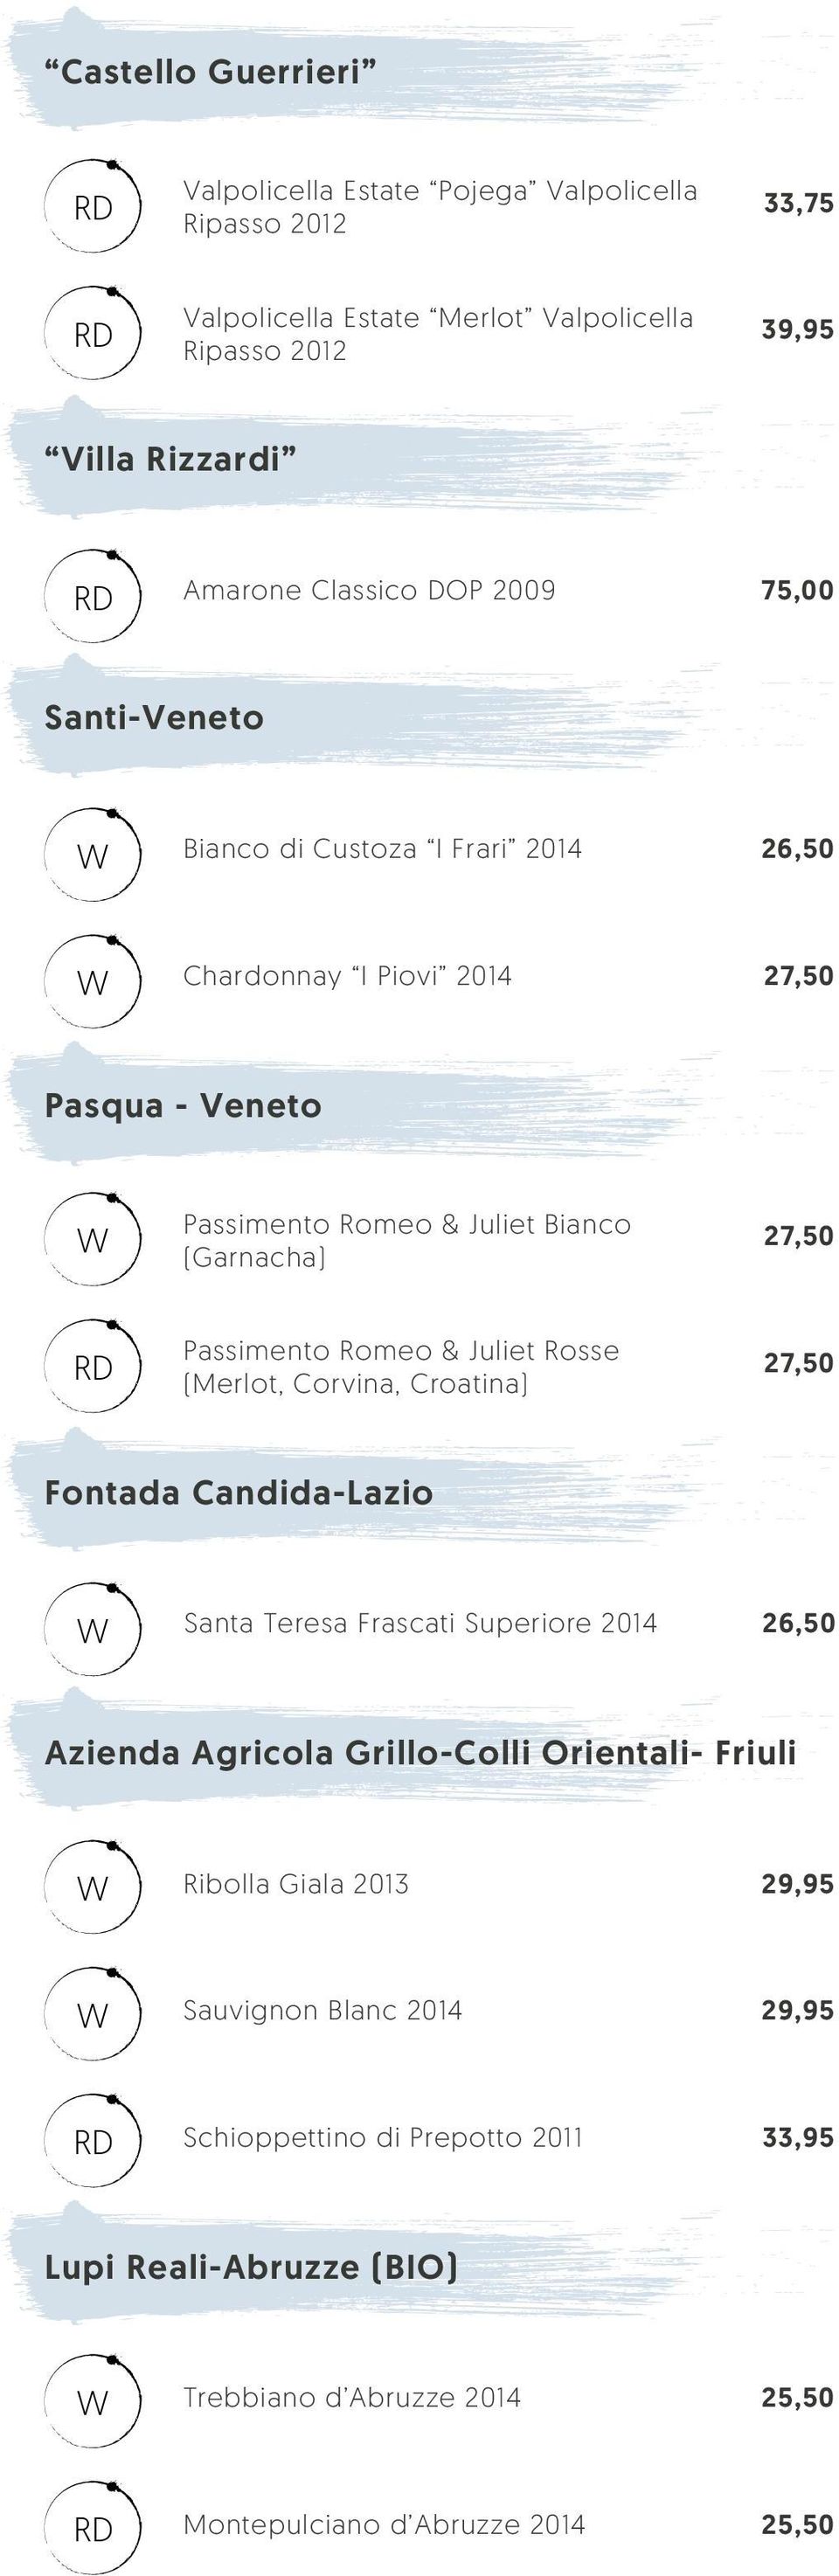 Passimento Romeo & Juliet Rosse (Merlot, Corvina, Croatina) Fontada Candida-Lazio Santa Teresa Frascati Superiore 2014 26,50 Azienda Agricola Grillo-Colli Orientali-